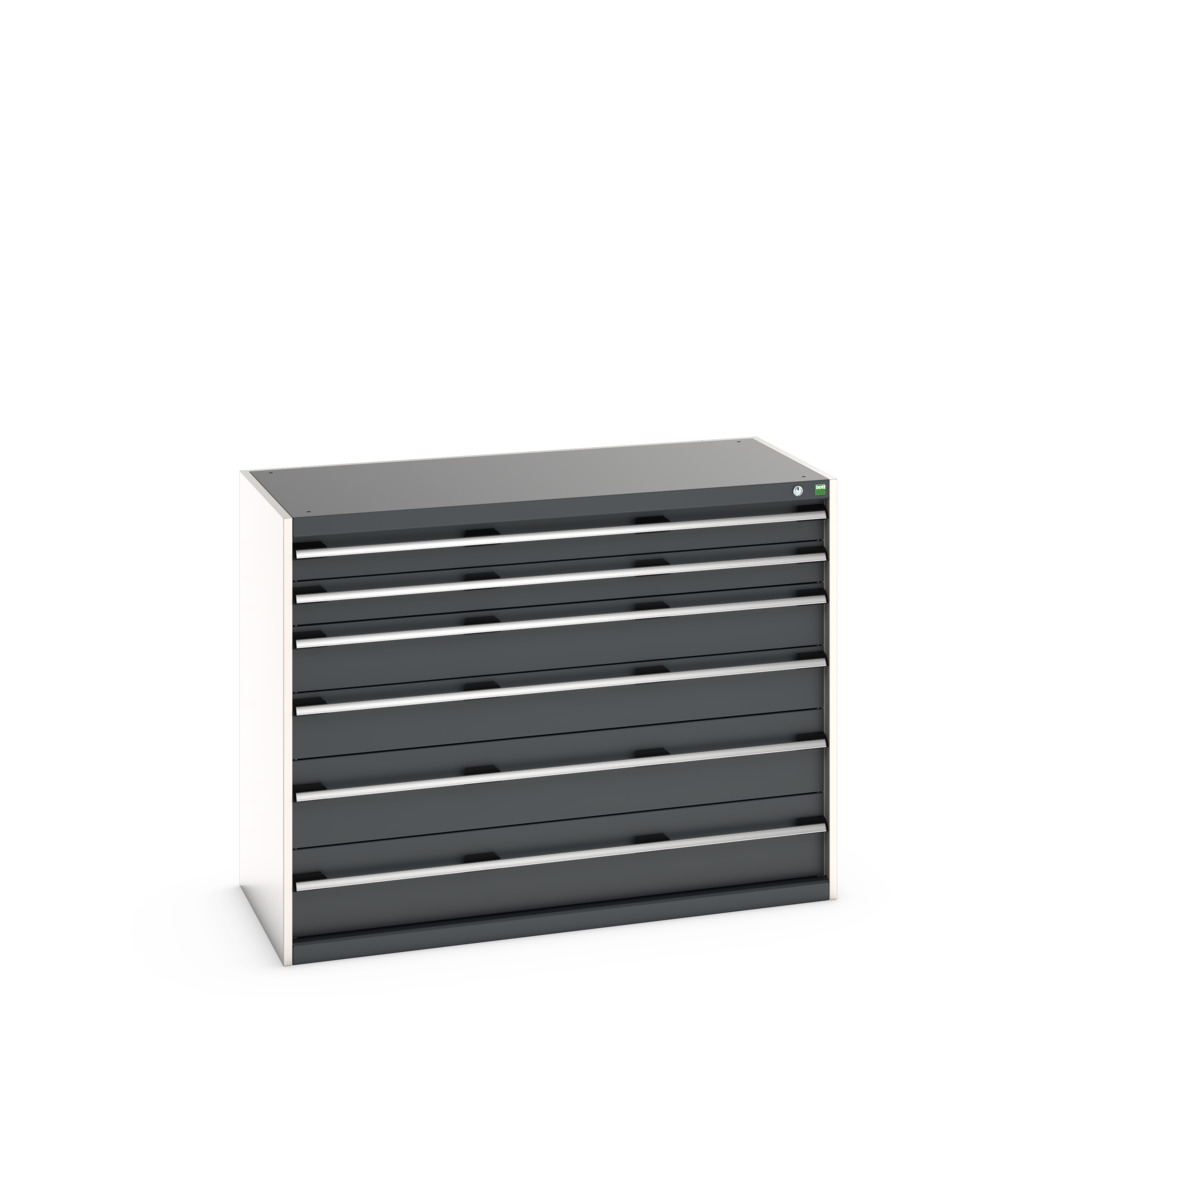 40022124.19V - cubio drawer cabinet